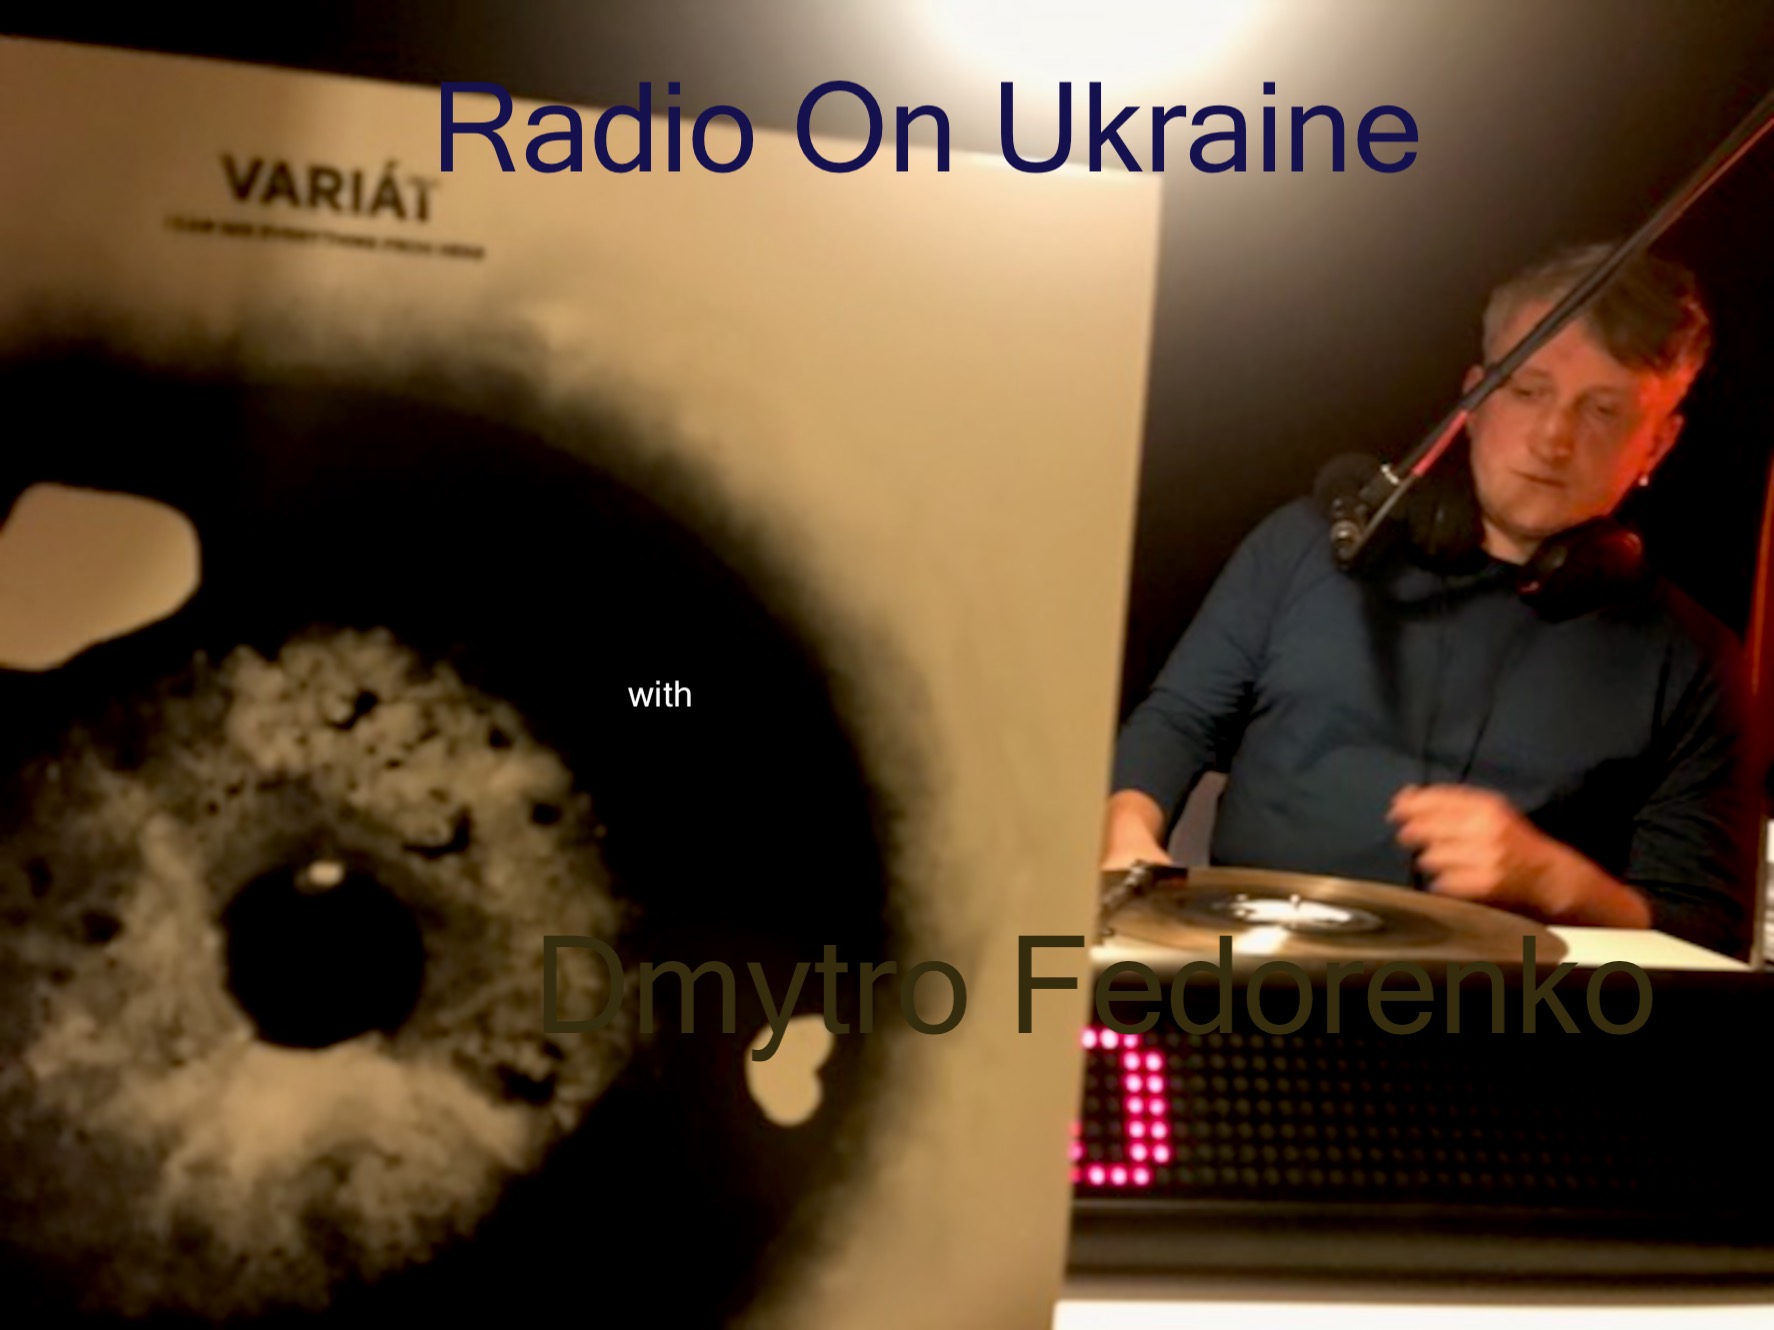 Radio On Ukraine with Dmytro Fedorenko